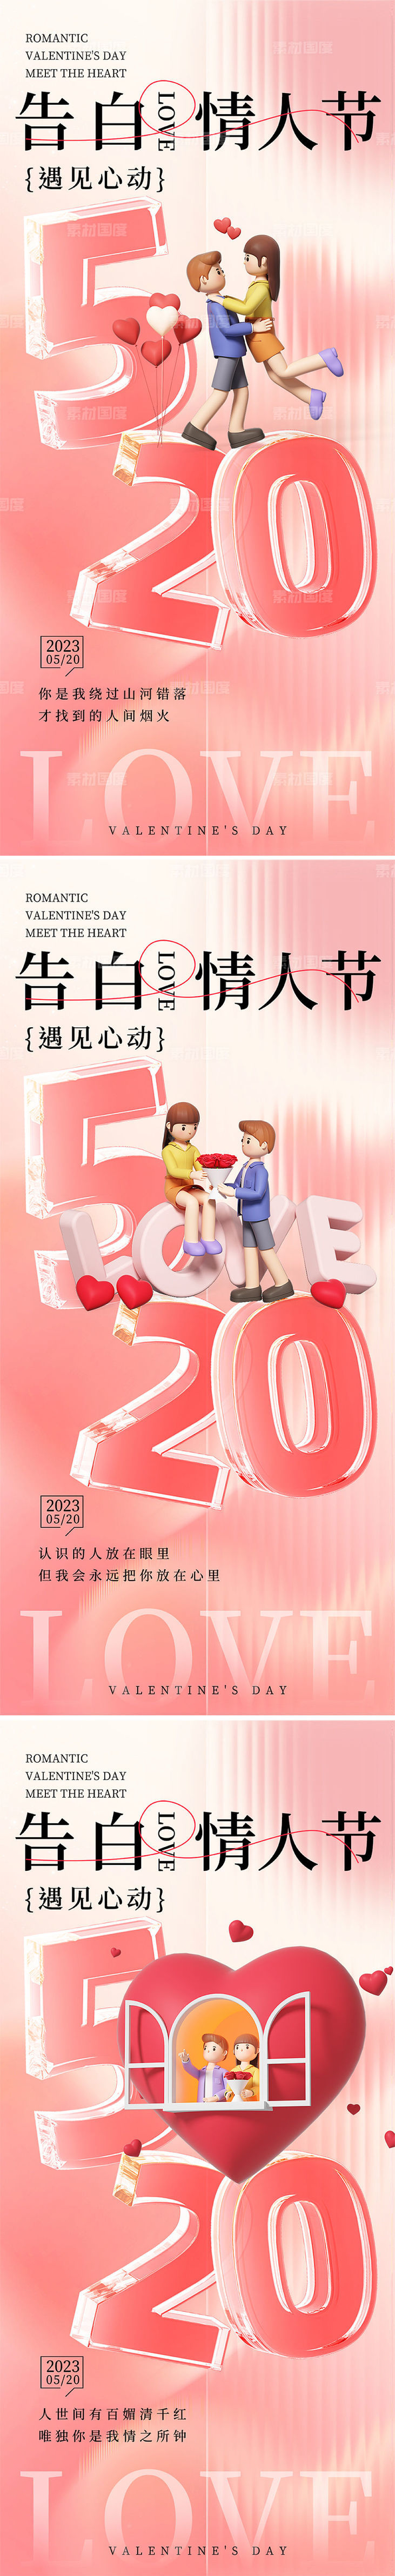 520情人节系列海报设计